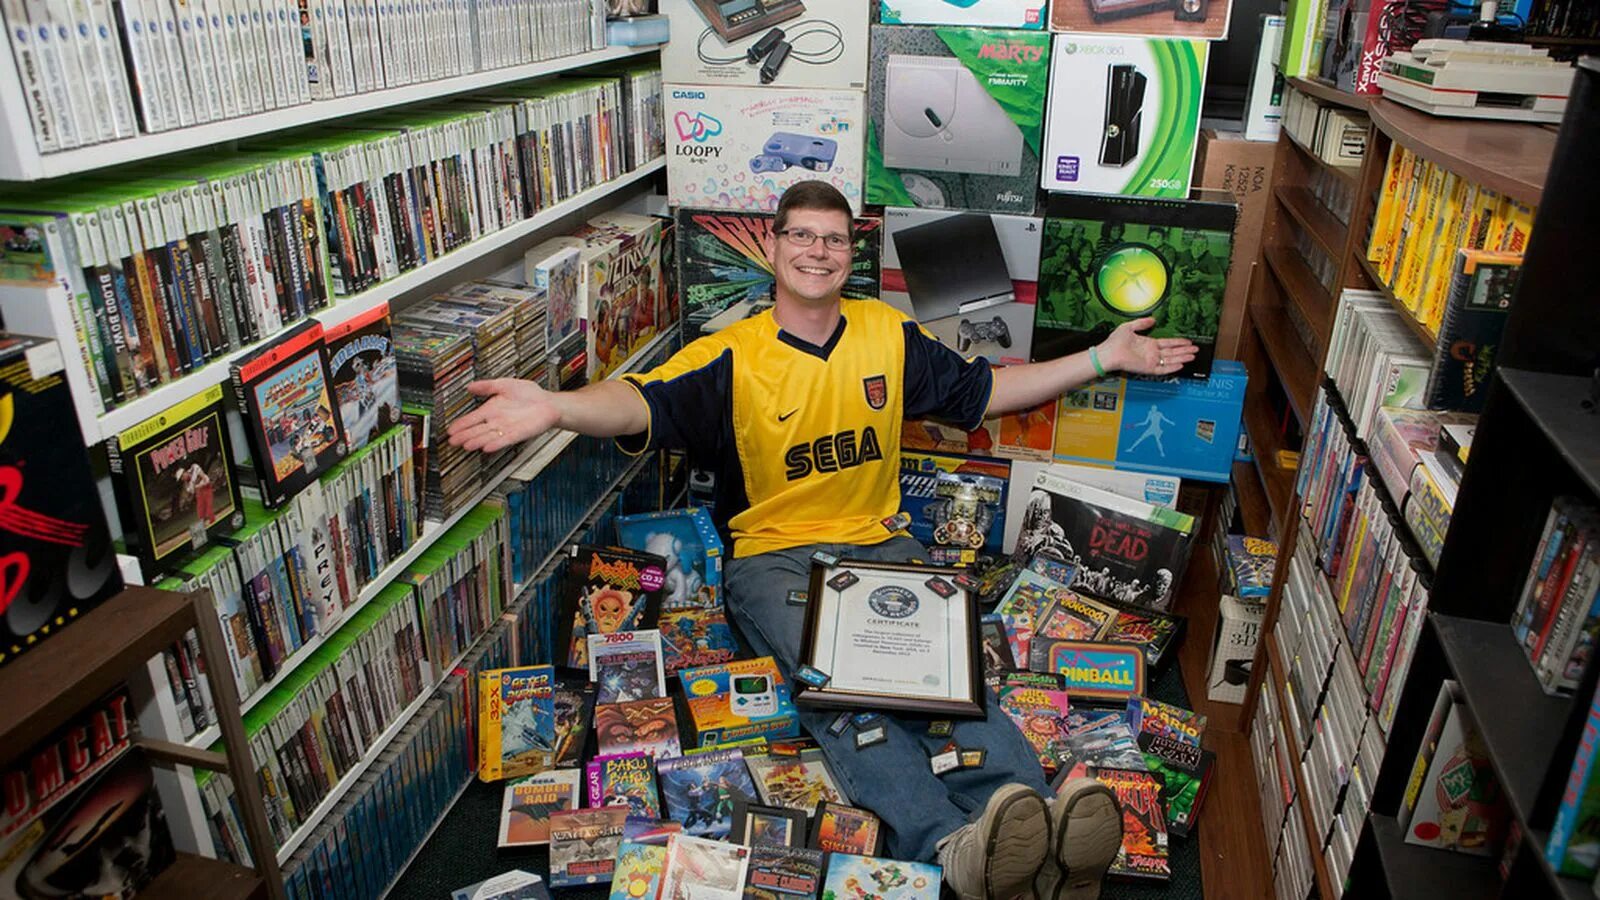 Самая большая коллекция игр. Коллекционер игровых приставок. Коллекционирование компьютерных игр. Самая большая коллекция видеоигр в мире. Франшиза компьютерной игры